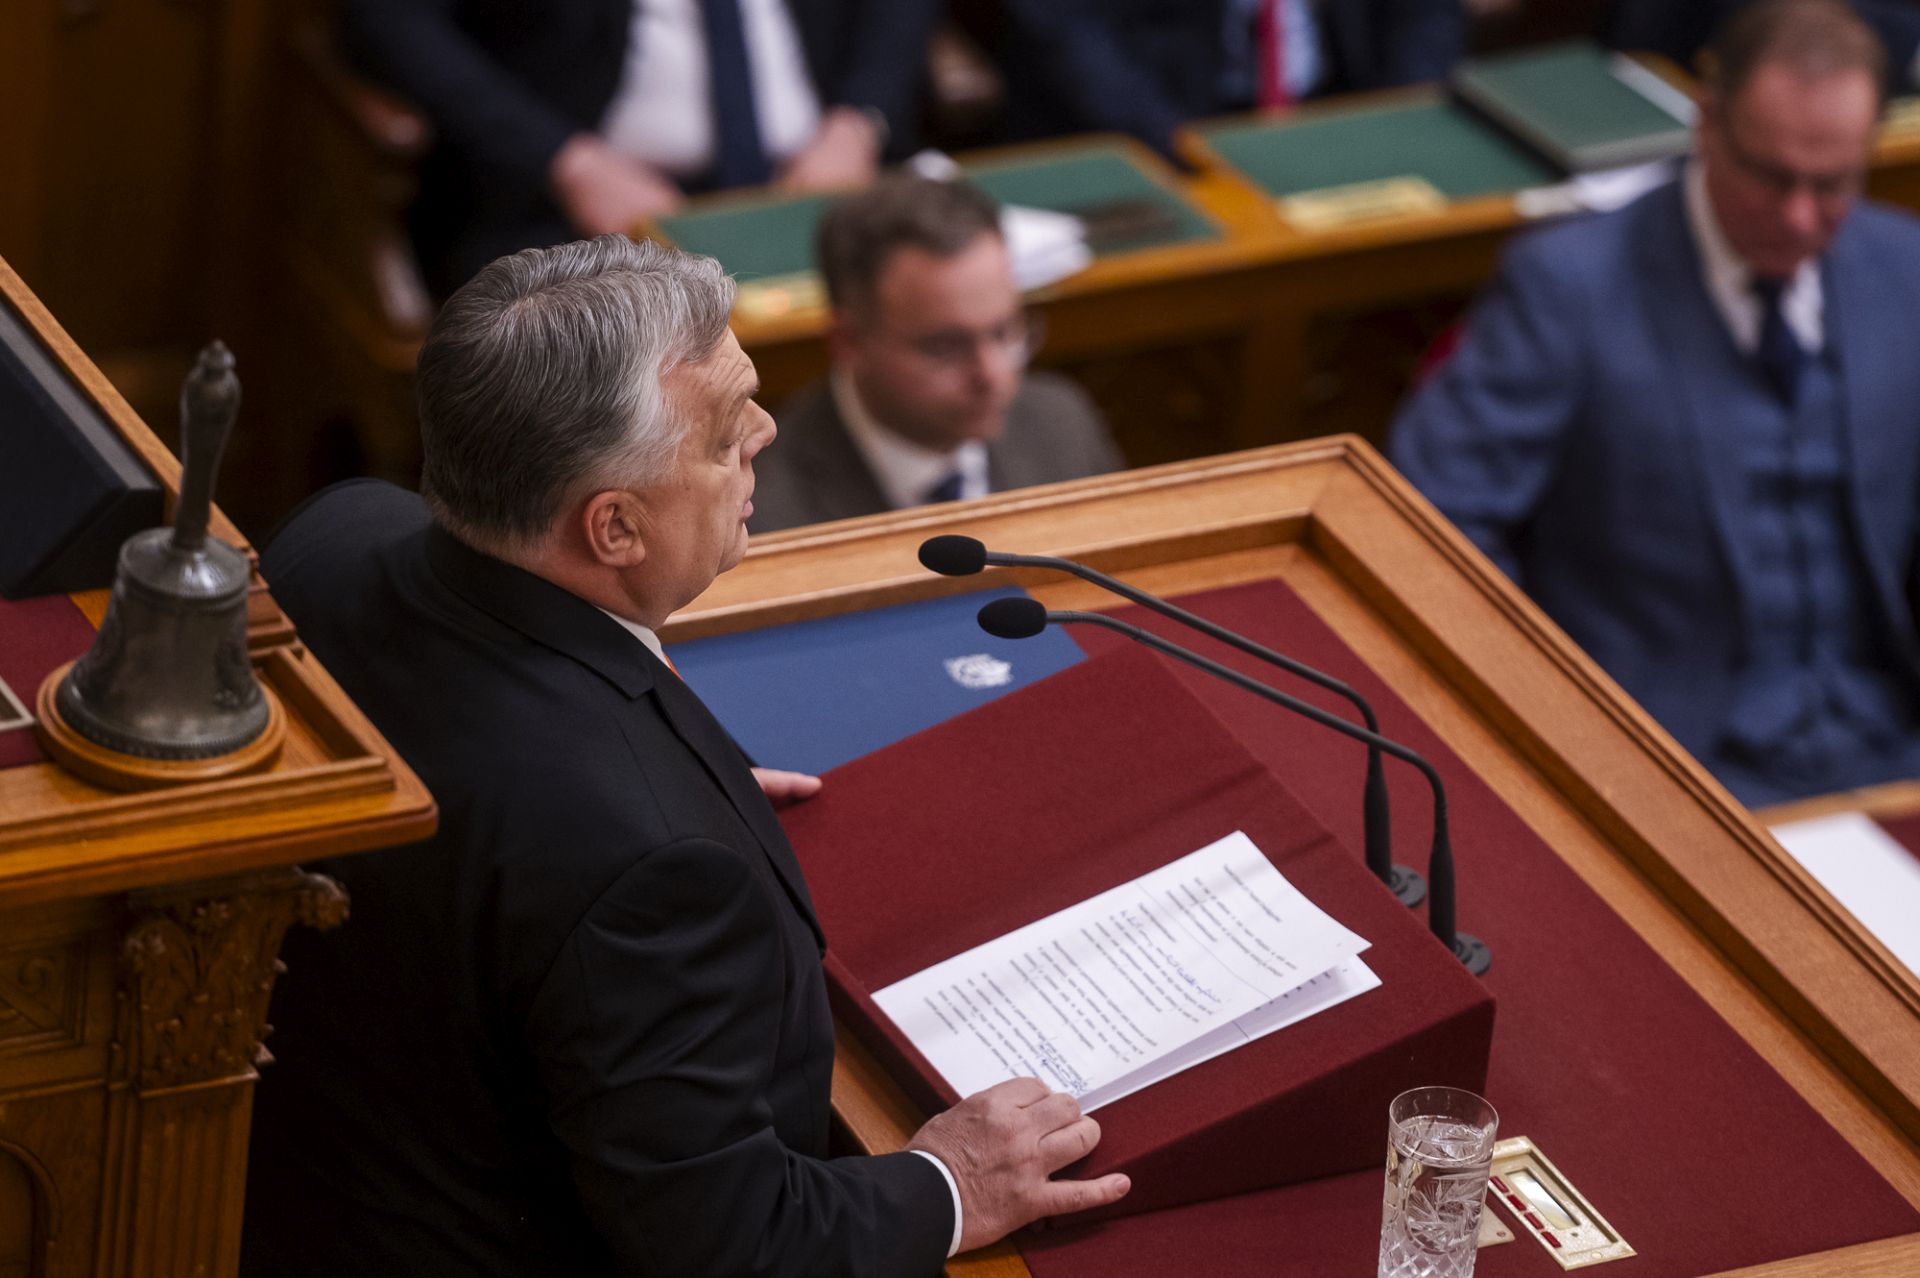 Mikor kér bocsánatot a kormány? – kérdezték Orbán Viktortól a parlamentben